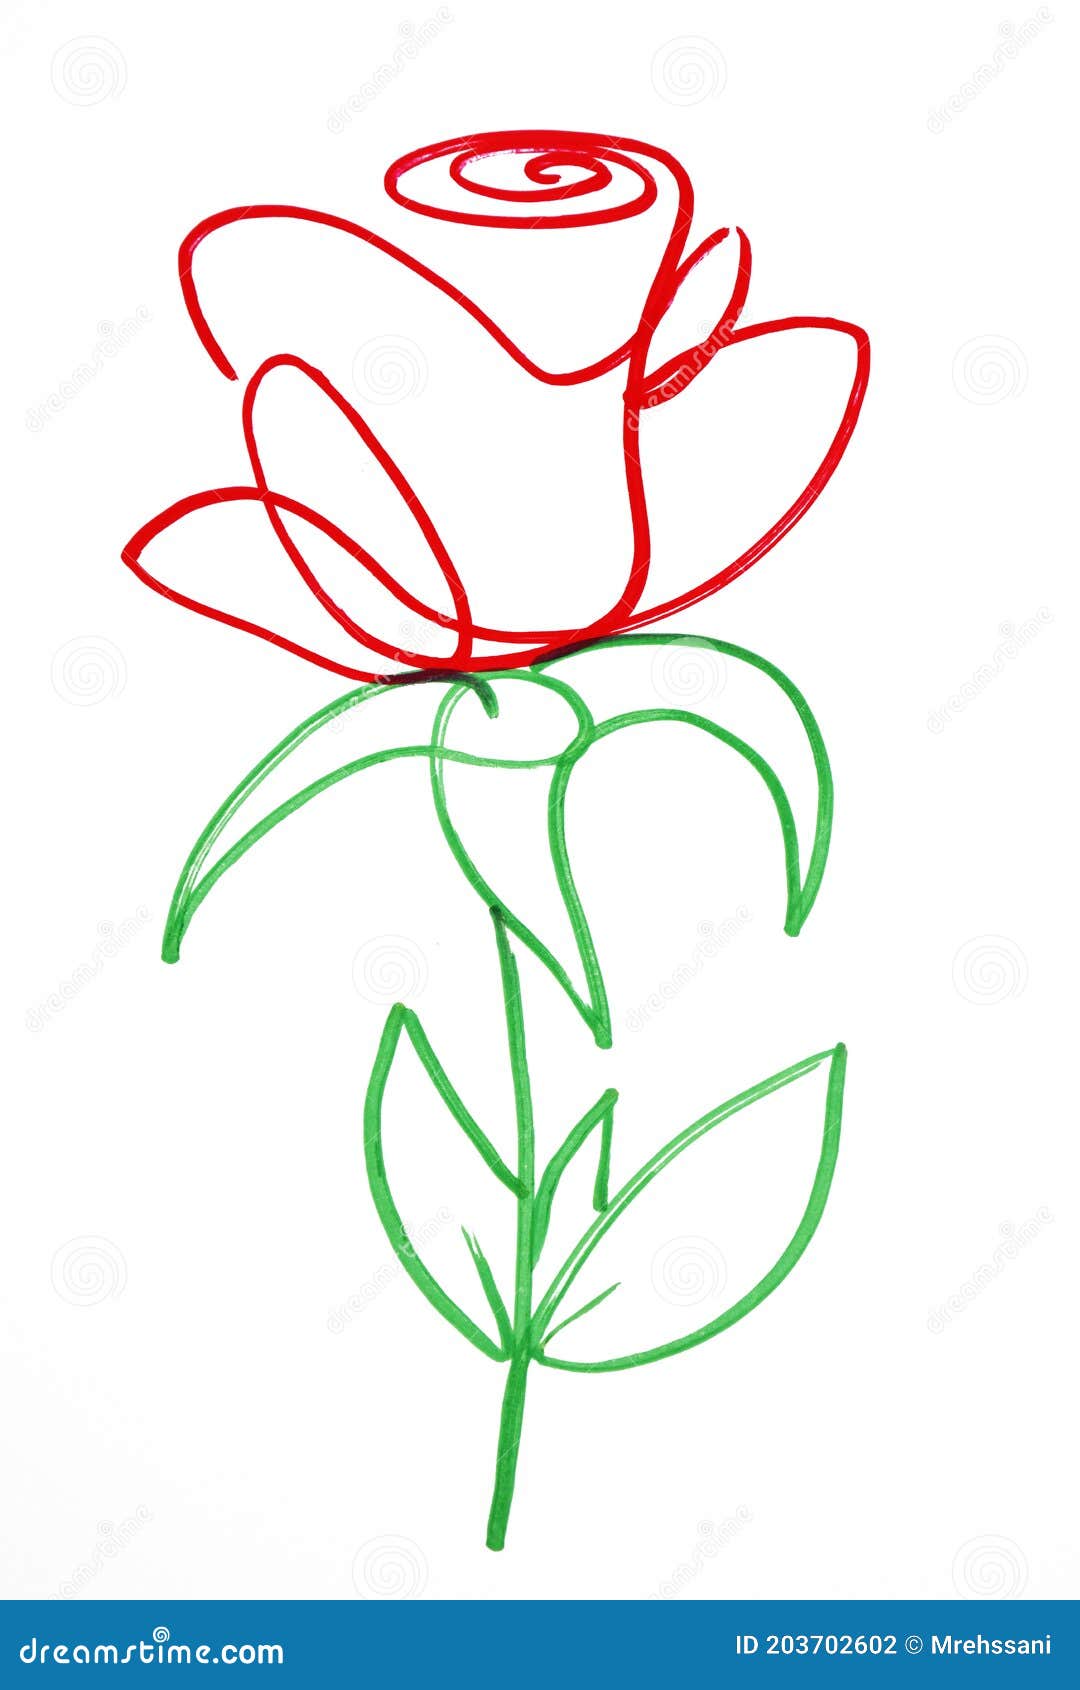 Cómo dibujar paso a paso una rosa a lápiz o carboncillo